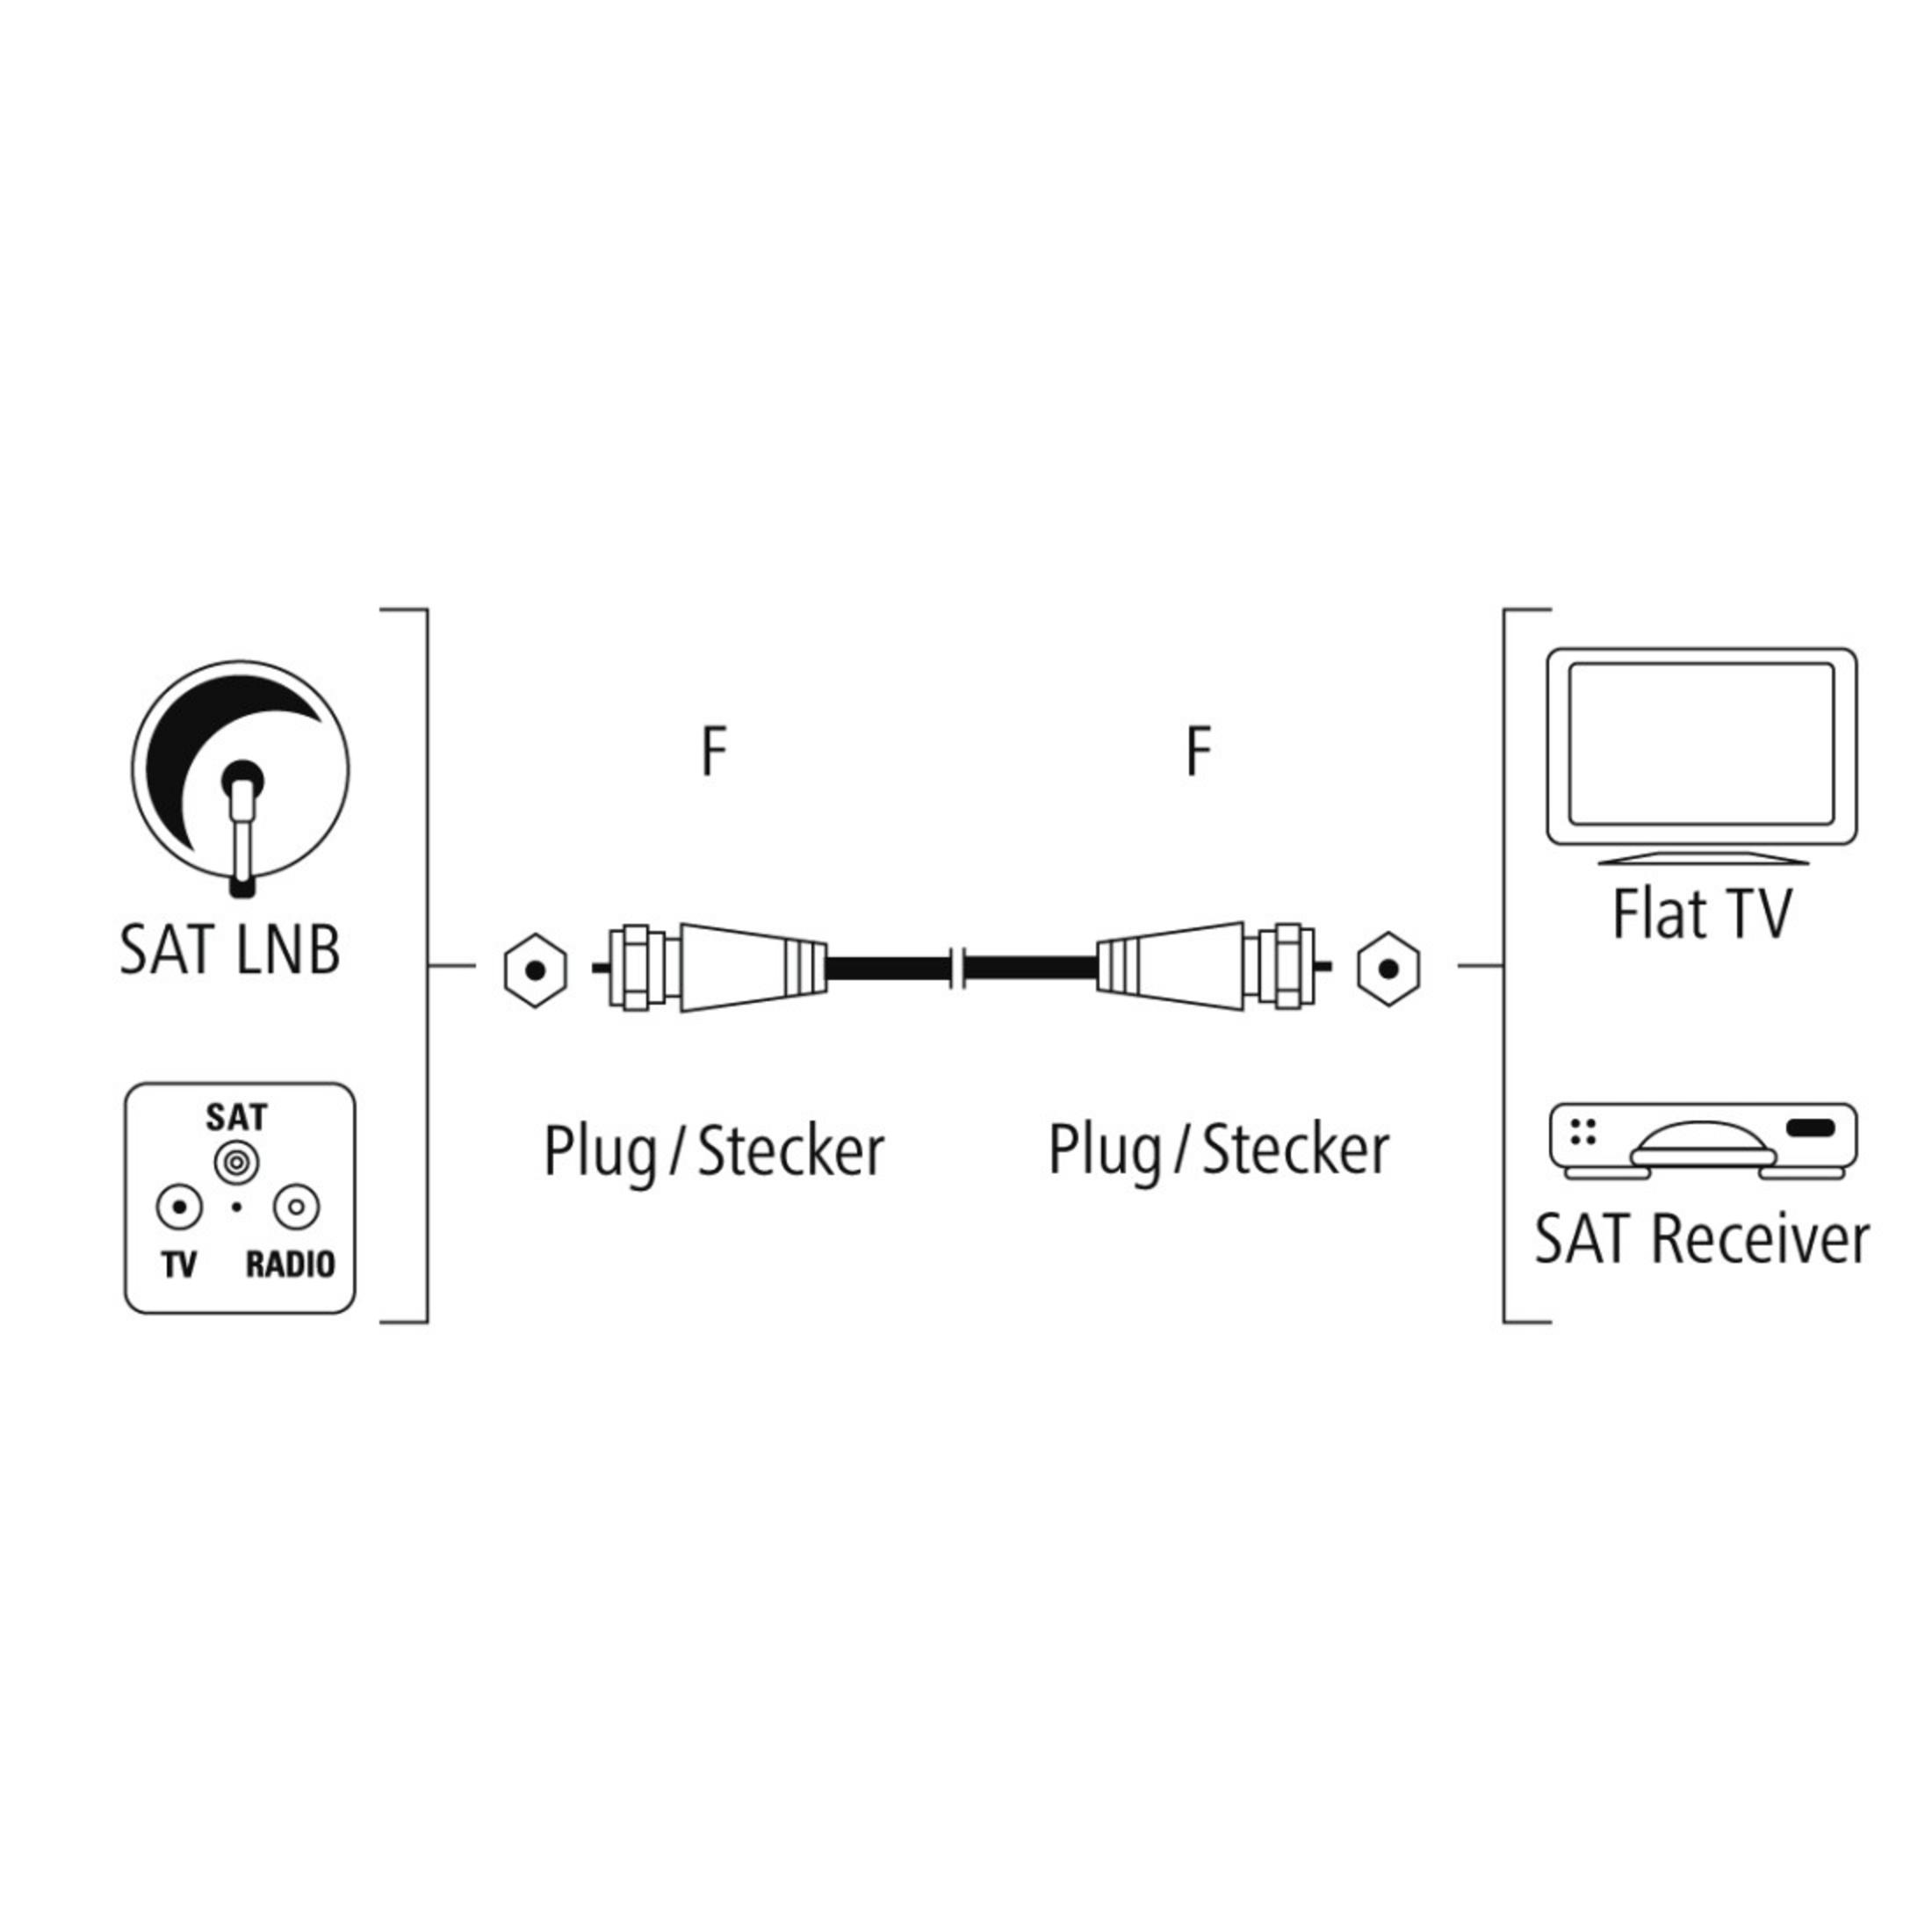 - HAMA F-Stecker SAT-Anschlusskabel F-Stecker